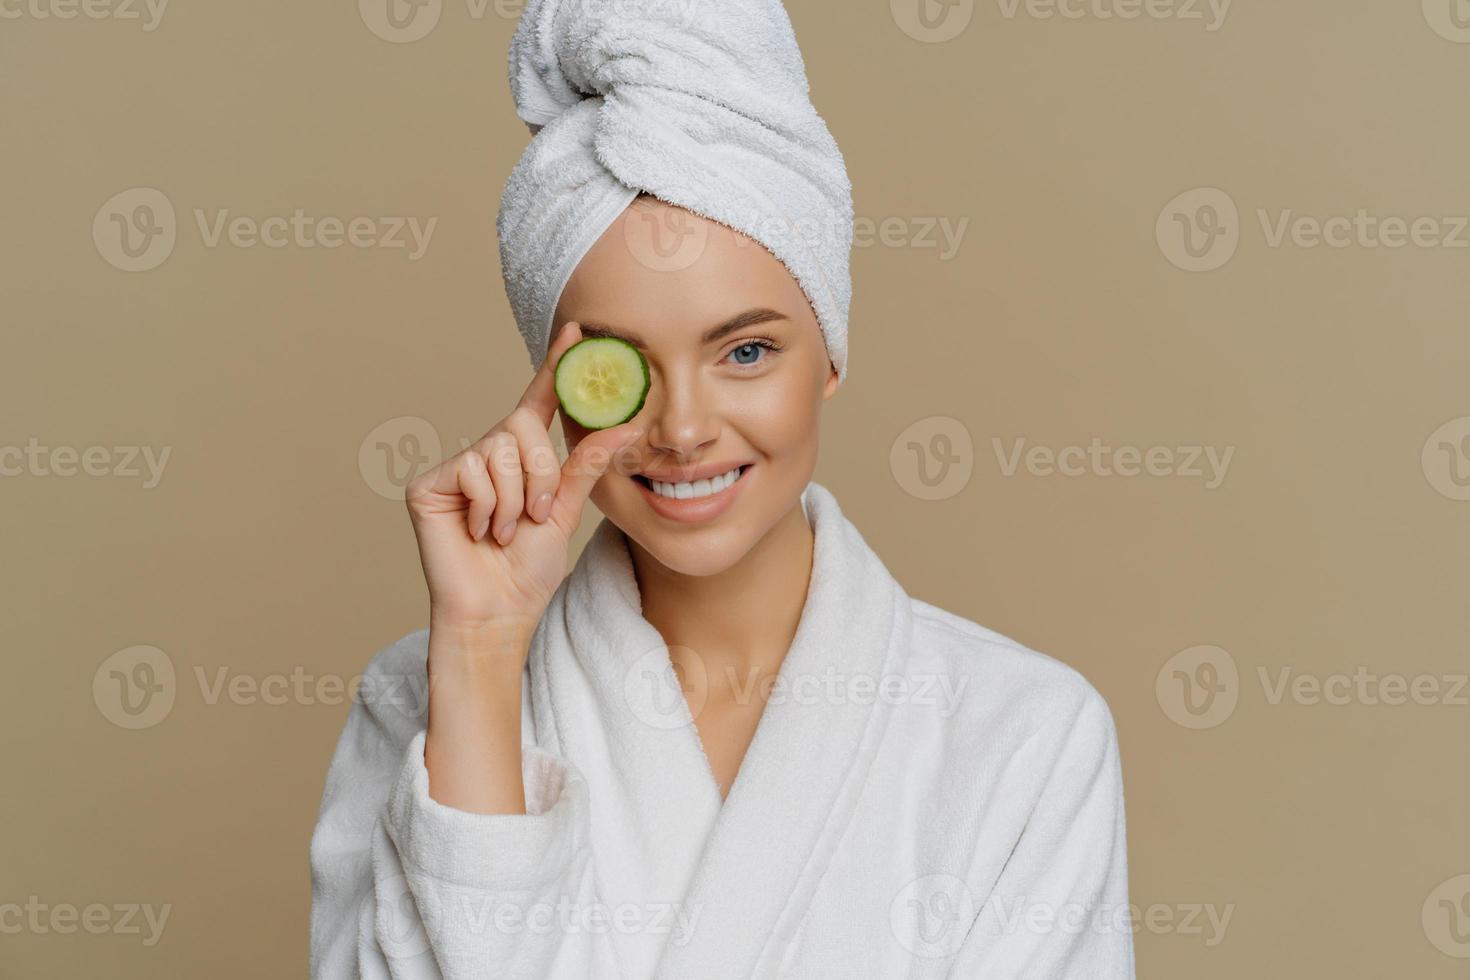 photo horizontale d'une femme ravie et rafraîchie couvre les yeux avec une tranche de concombre frais se soucie de la peau utilise des produits biologiques sourit agréablement vêtue d'une robe de bain après avoir pris une douche.